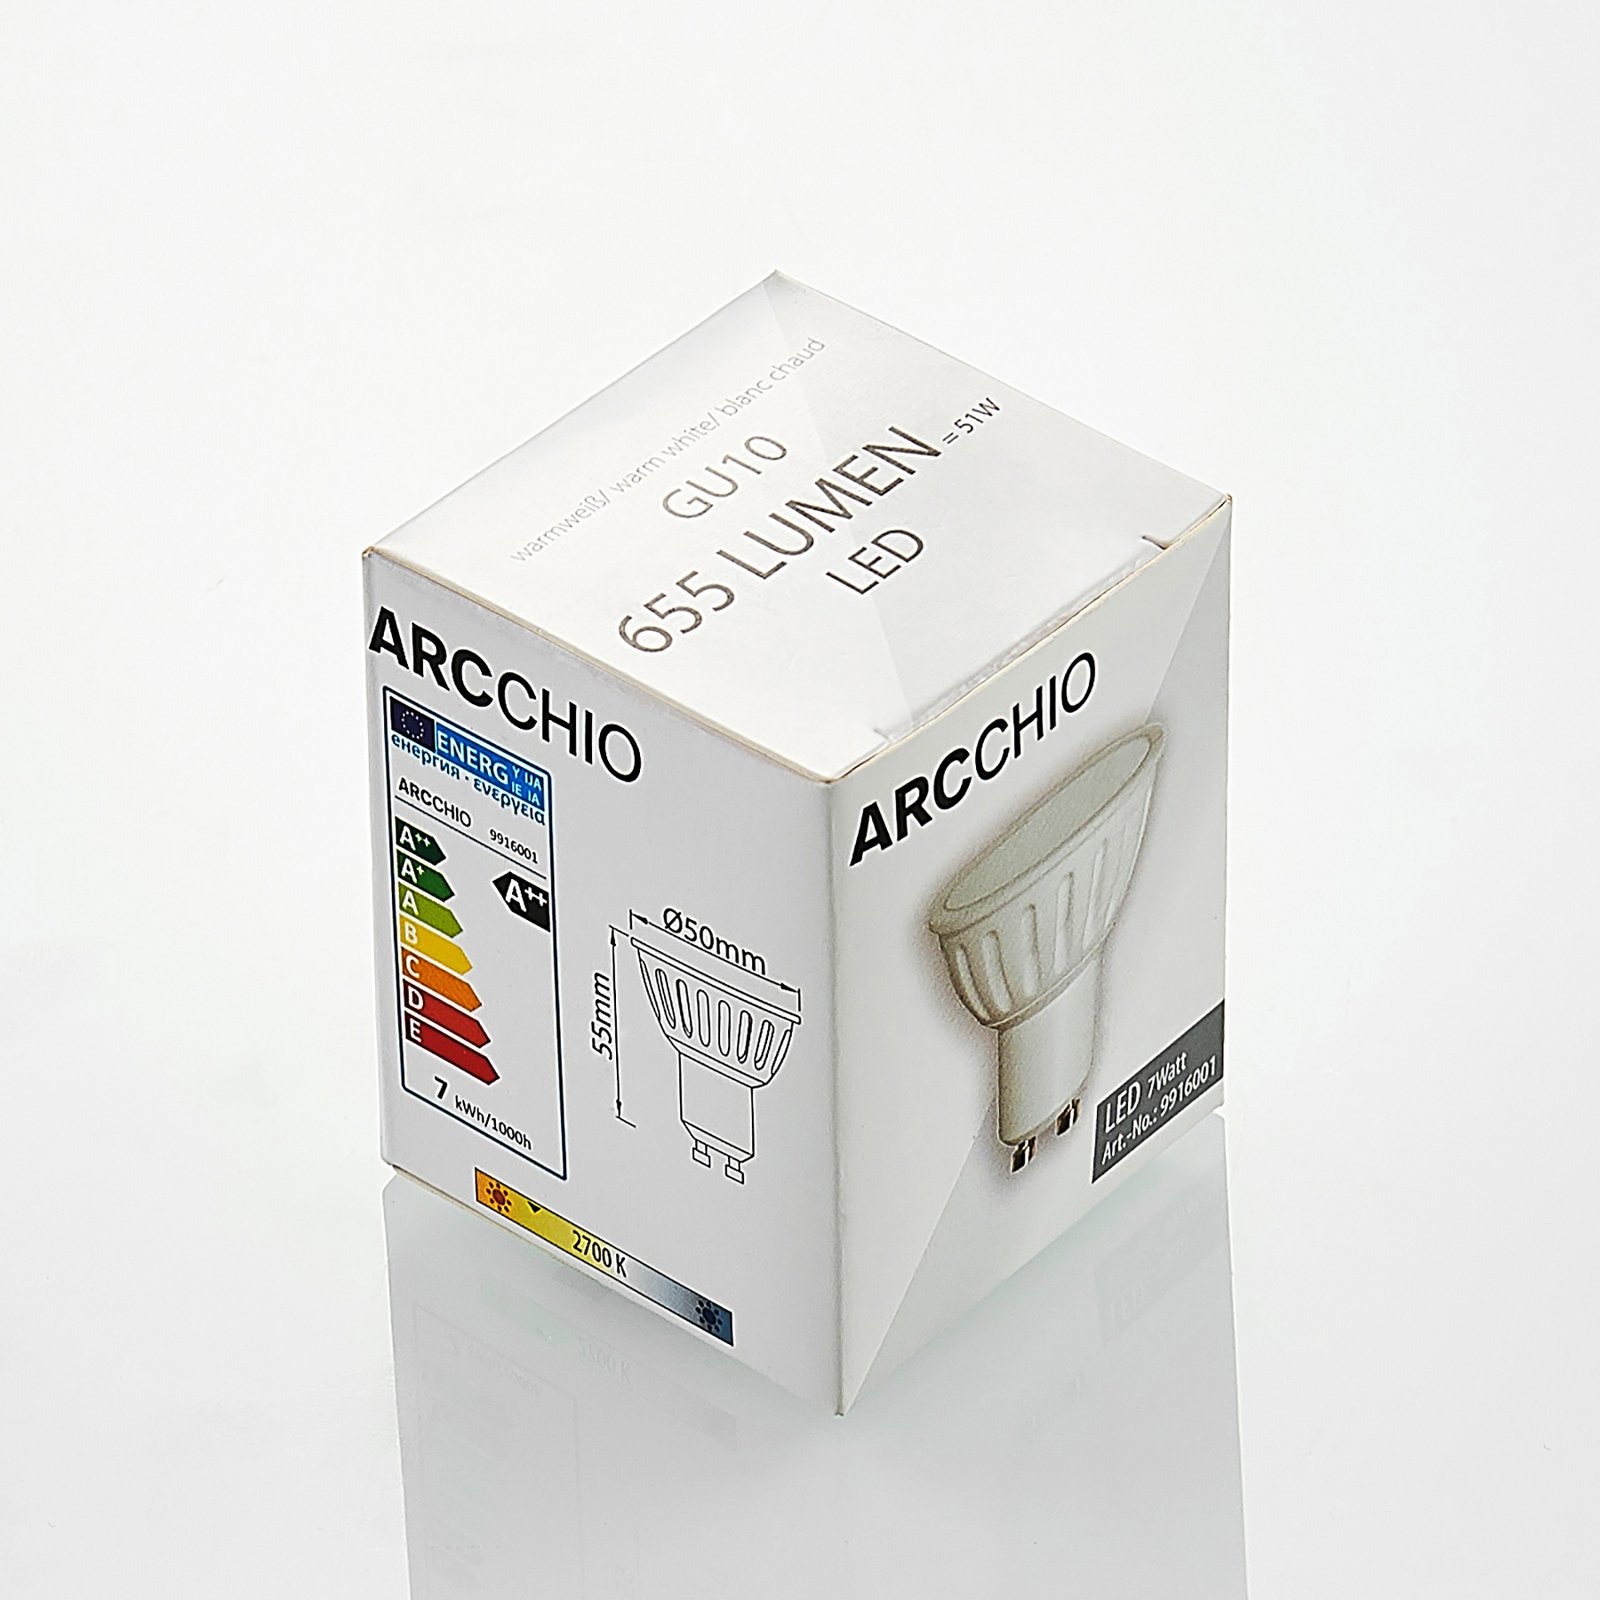 Arcchio reflector LED bulb GU10 100° 7W 3,000K 2x